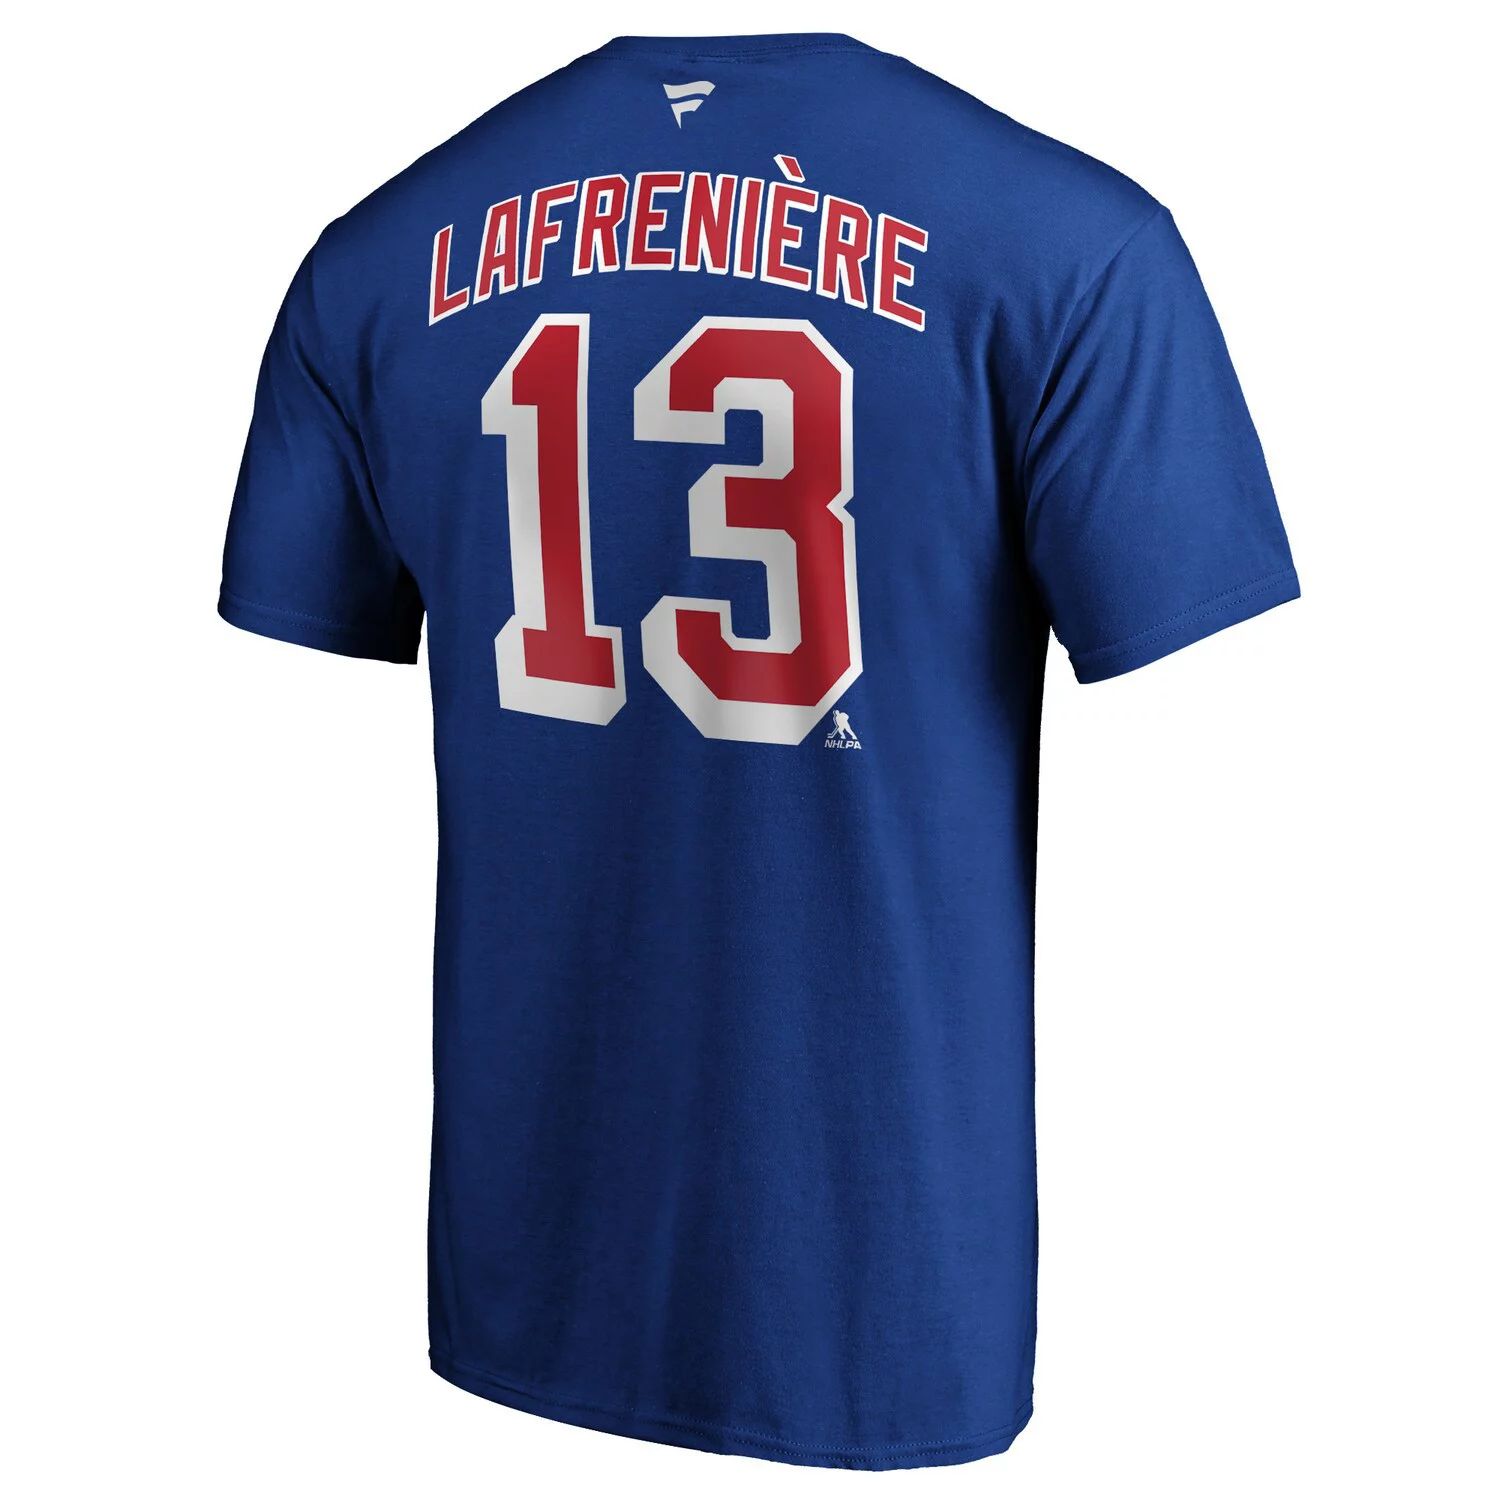 Мужская синяя футболка с фирменным знаком Alexis Lafrenière New York Rangers с аутентичным именем и номером Stack Fanatics